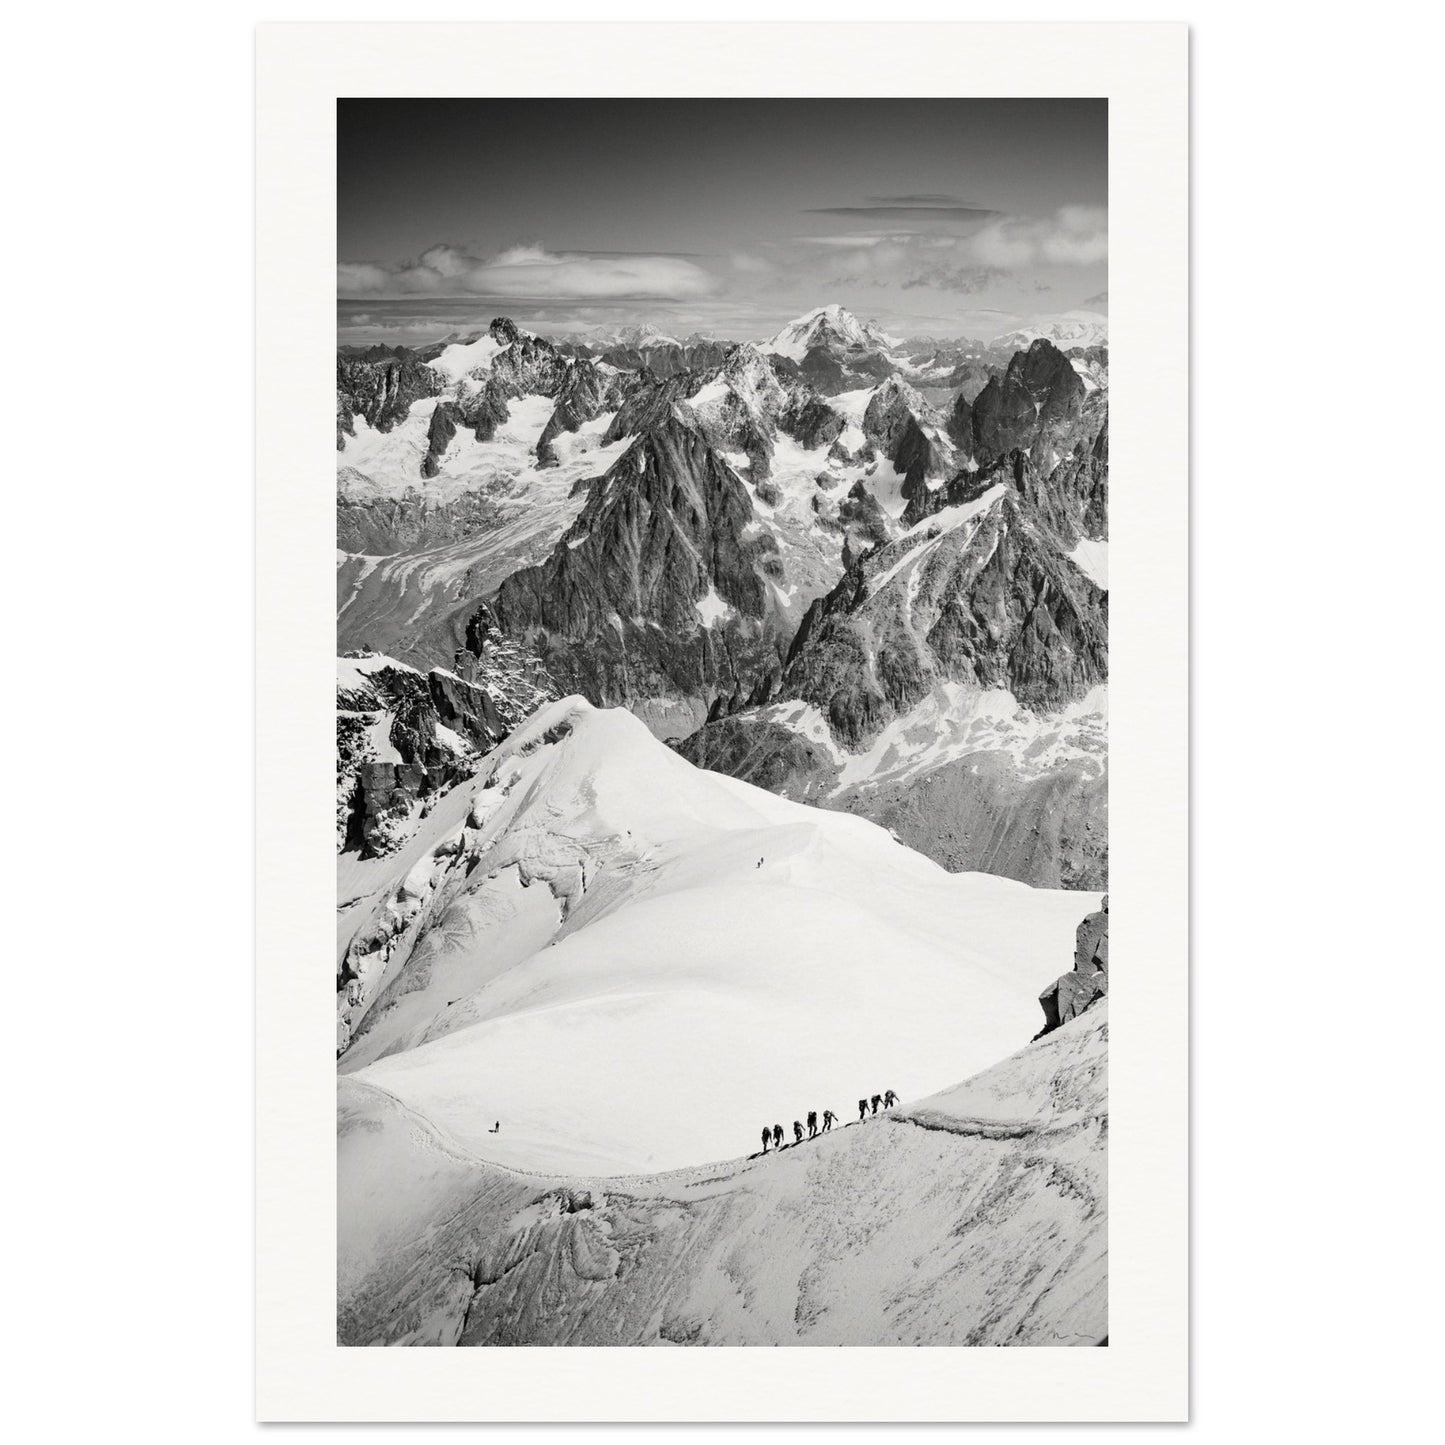 Alpinistes arrivant à l'Aiguille du Midi